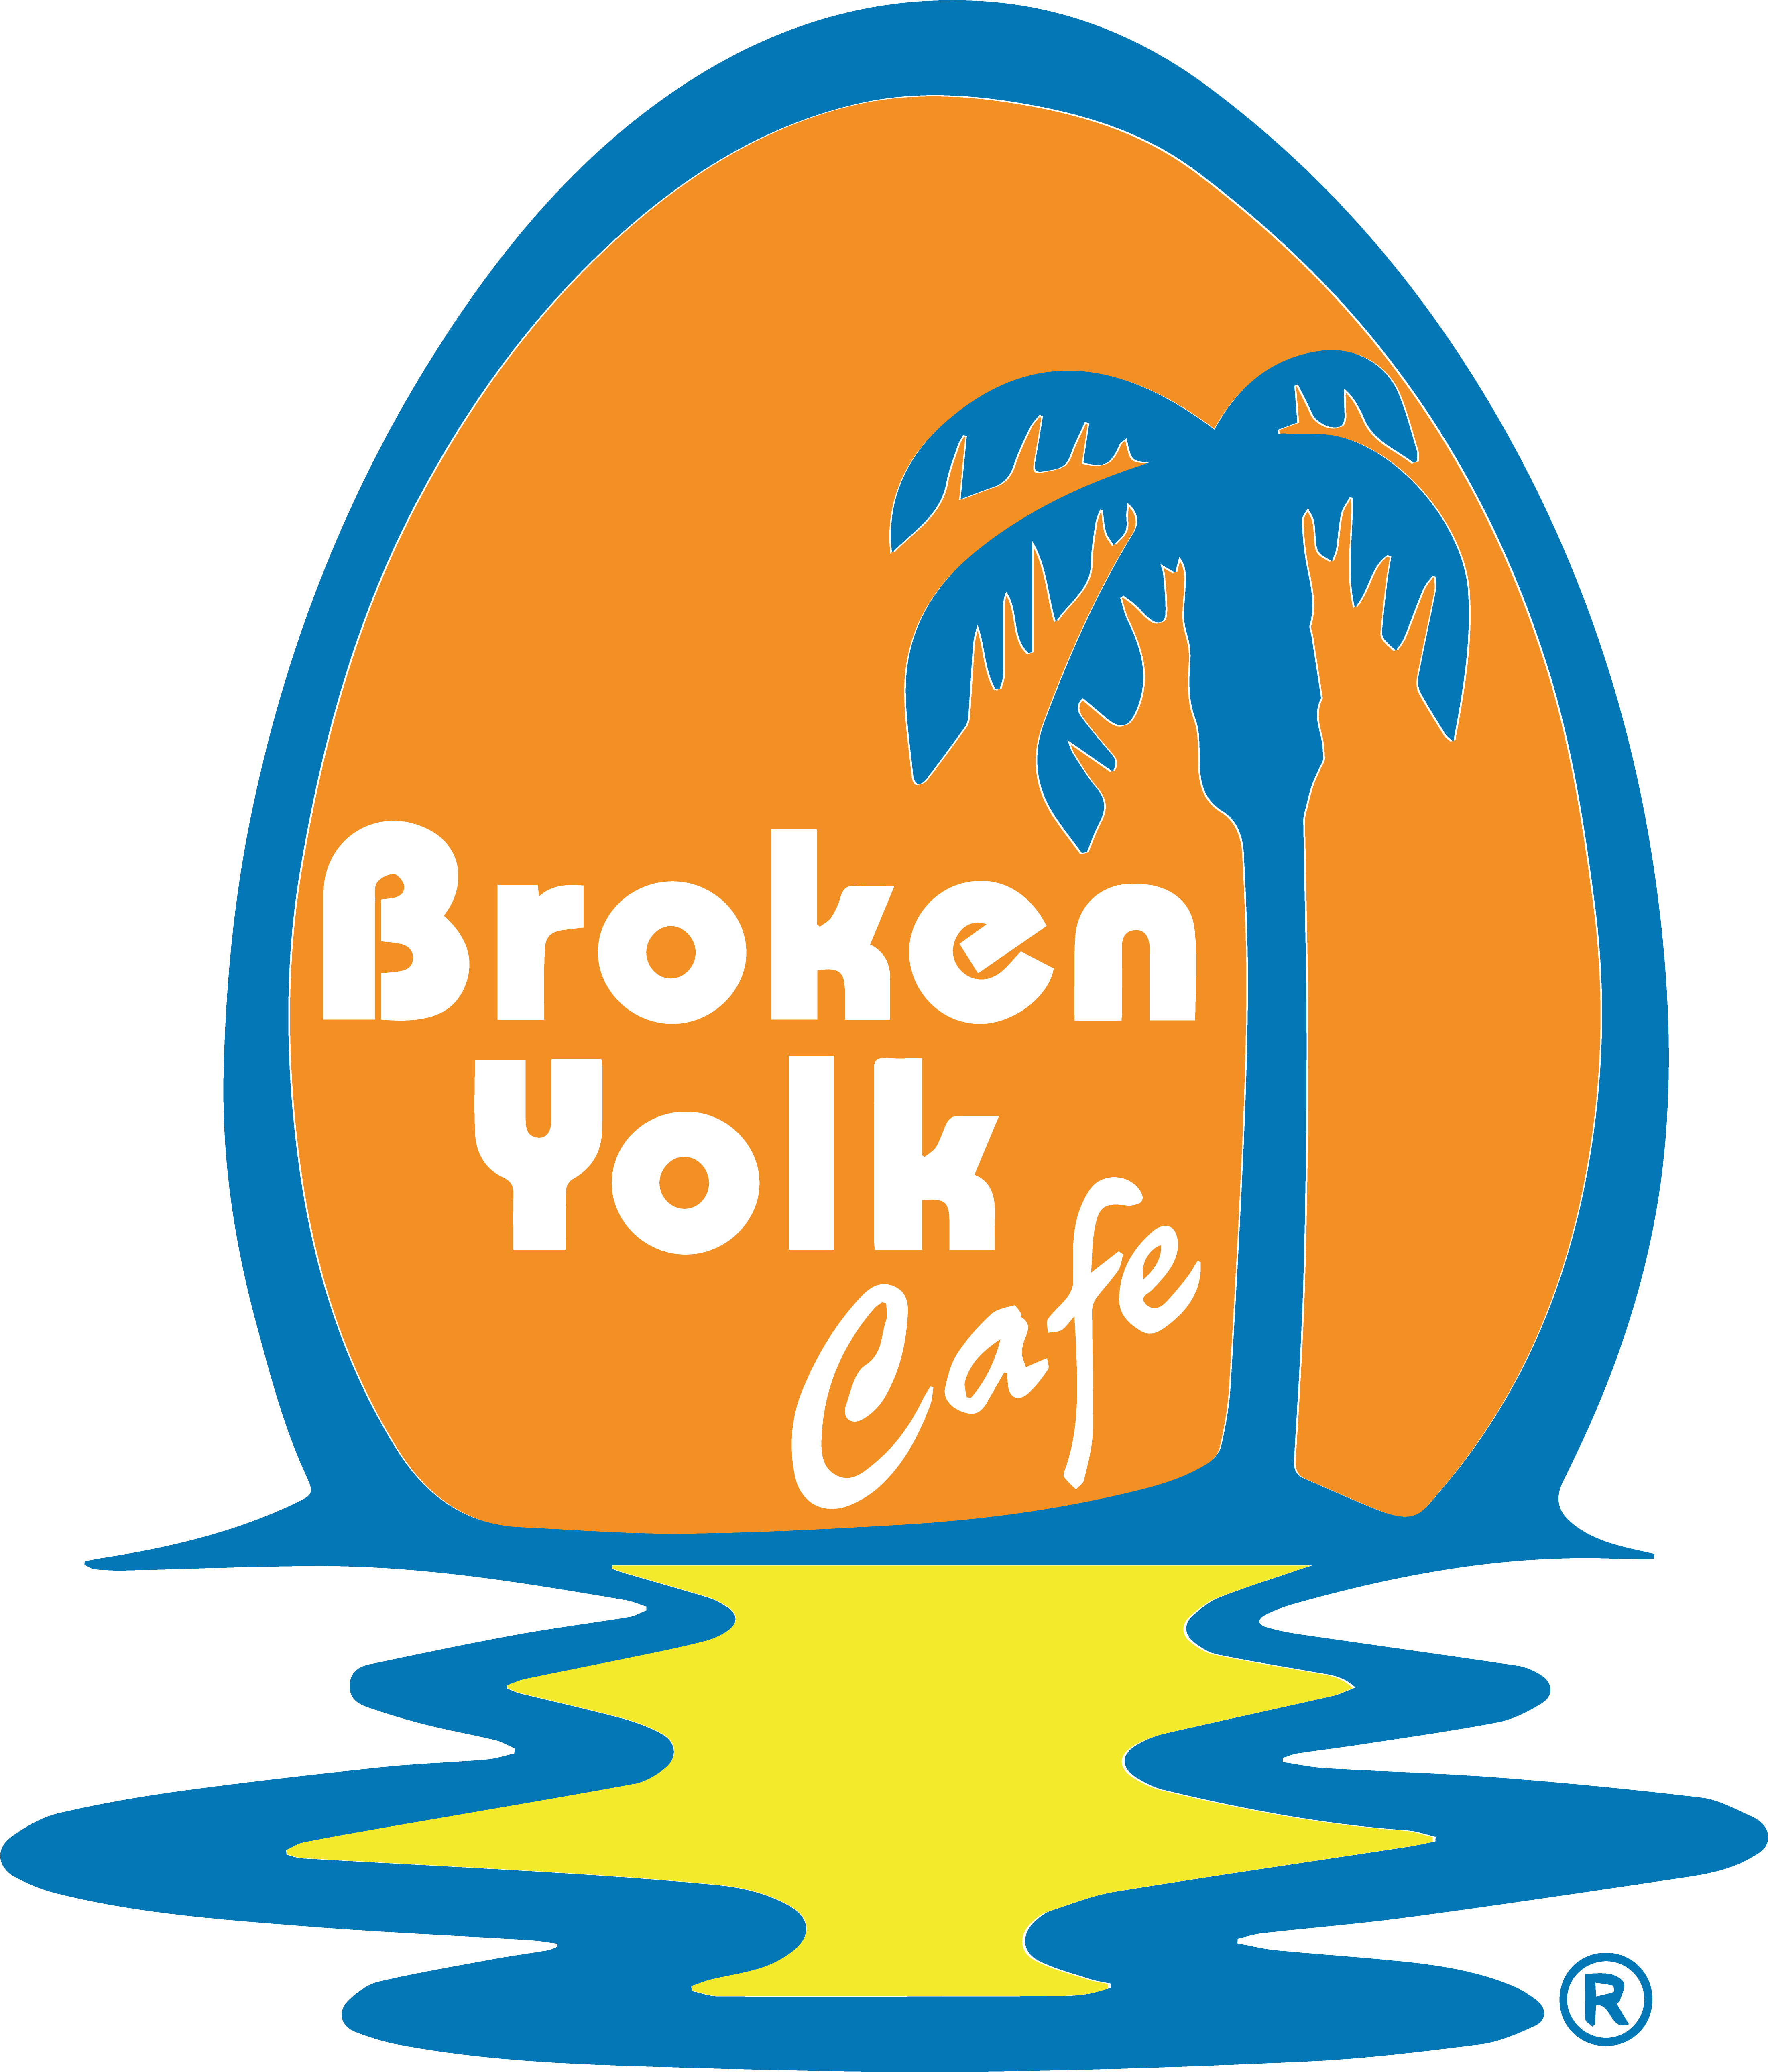 Broken Yolk Cafe is HIRING!